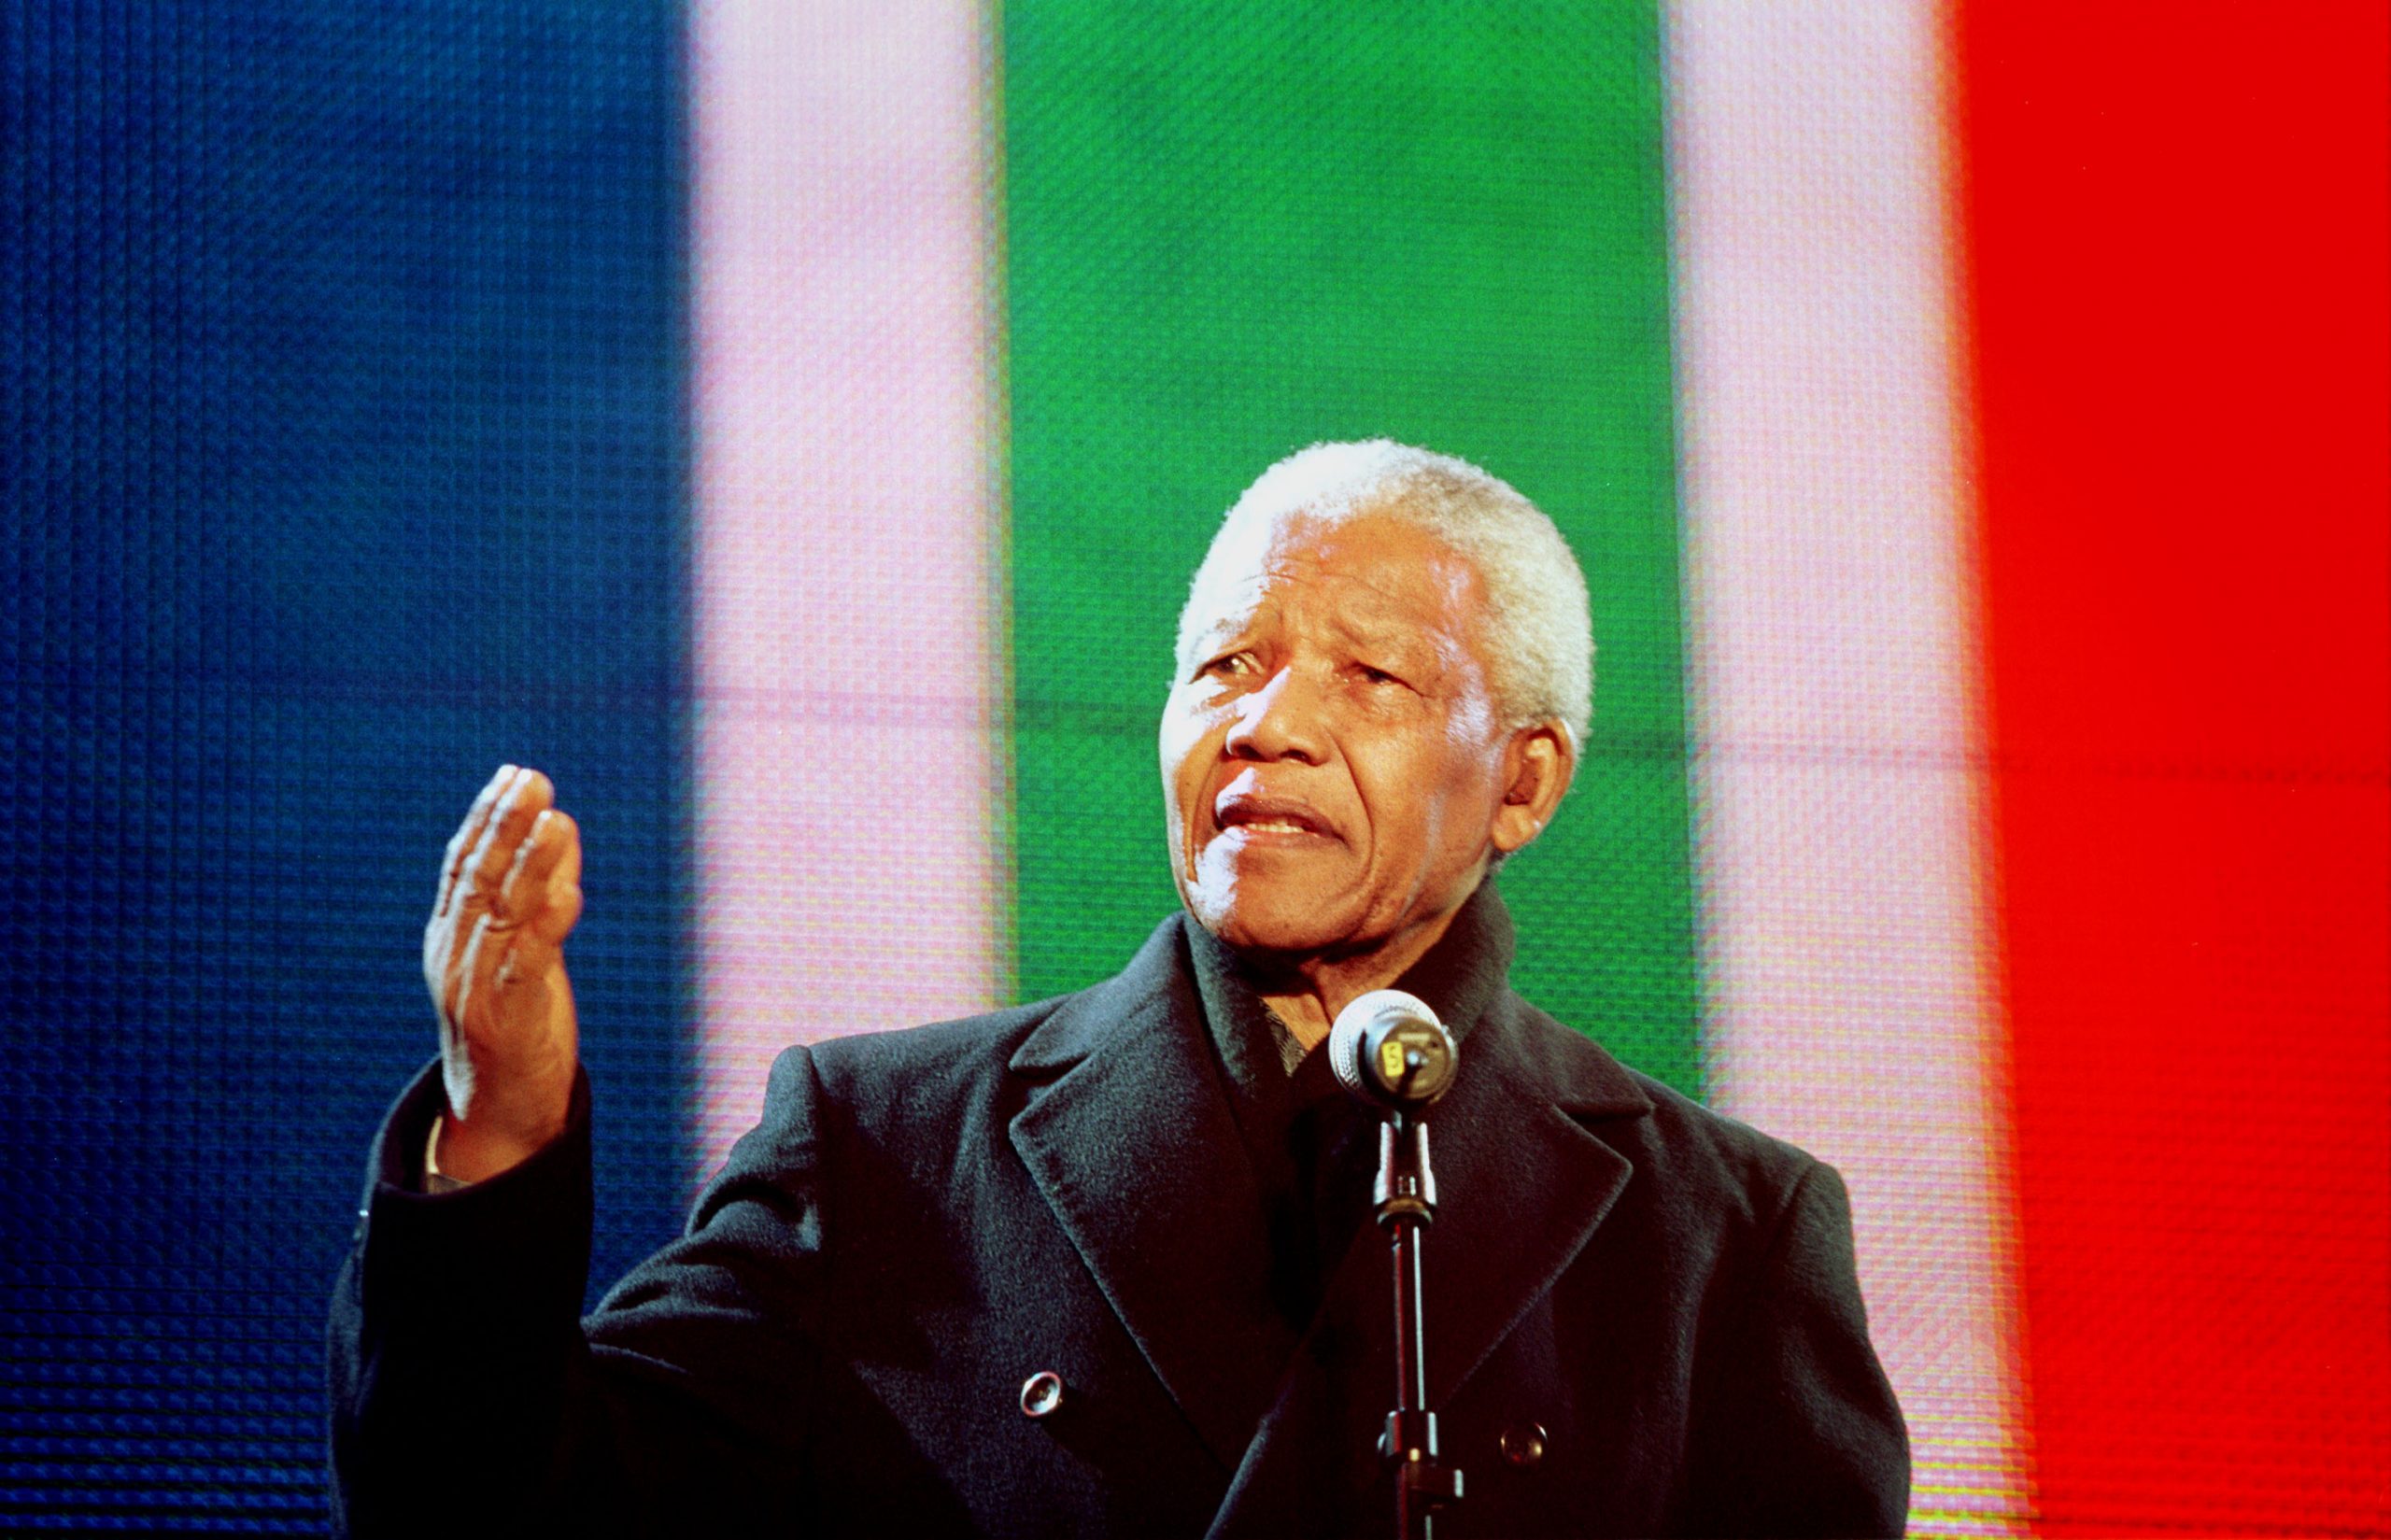 Nelson Mandela photo 2